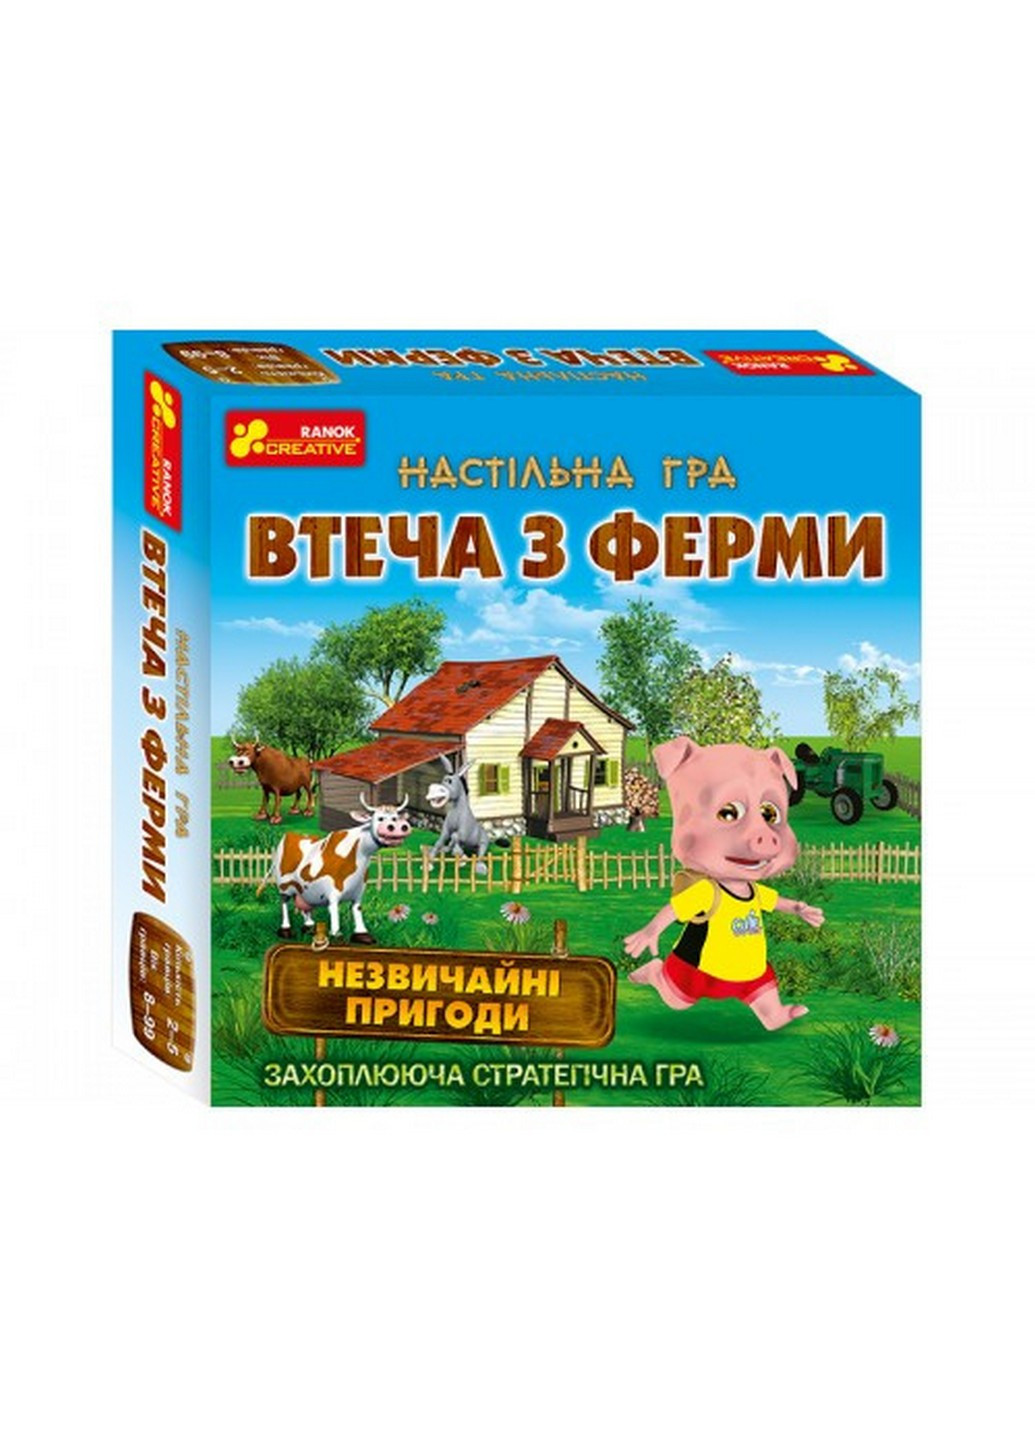 Детская настольная игра "Побег из фермы" на укр. языке 23,5х23,5х5,2 см Ranok Creative (257201795)